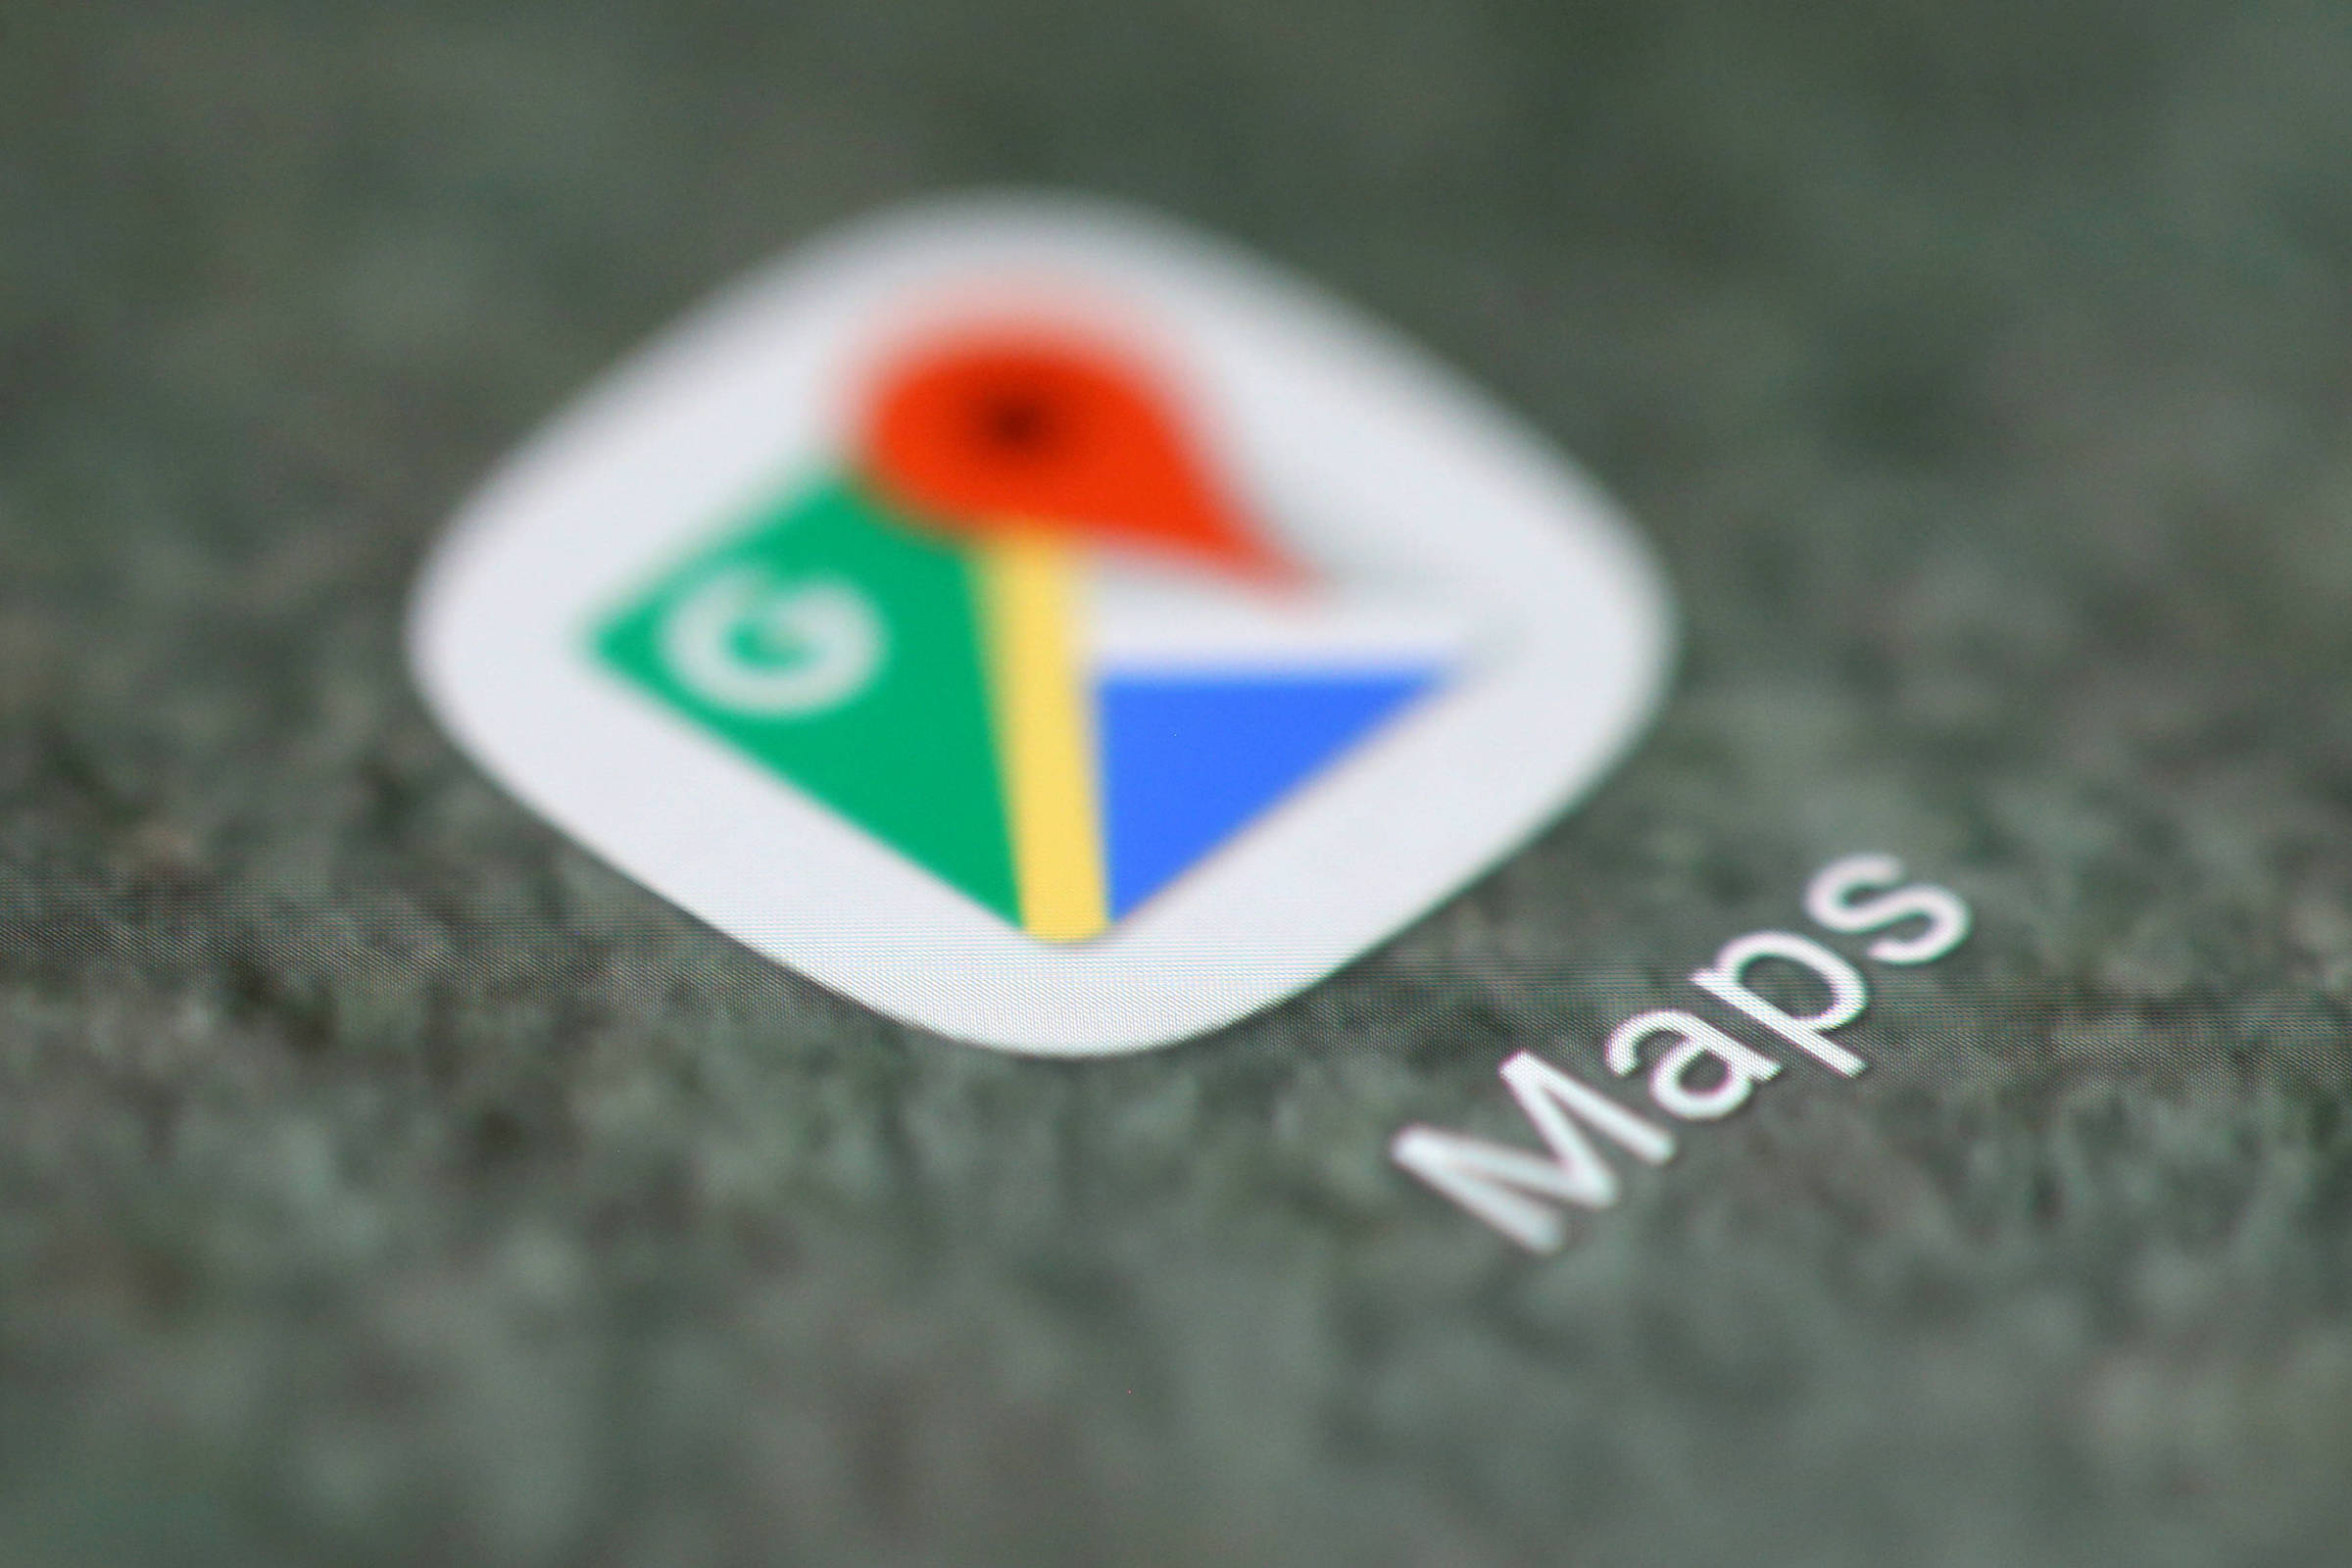 Conheça o GeoGuessr, site que propõe desafios usando o Google Maps